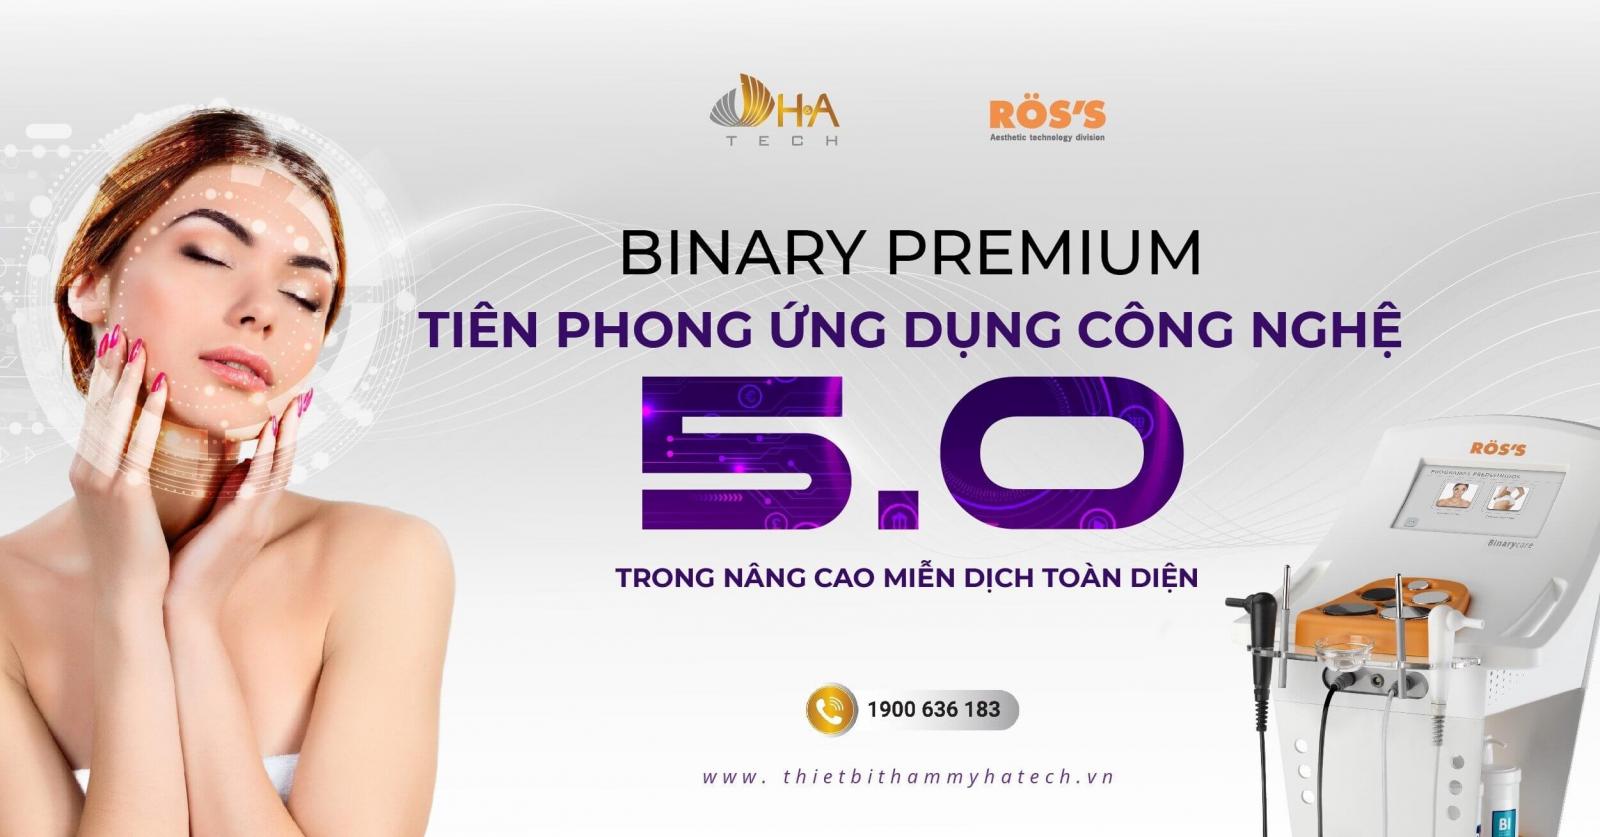 Binary Premium - Tiên phong ứng dụng Công nghệ 5.0 trong nâng cao miễn dịch toàn diện